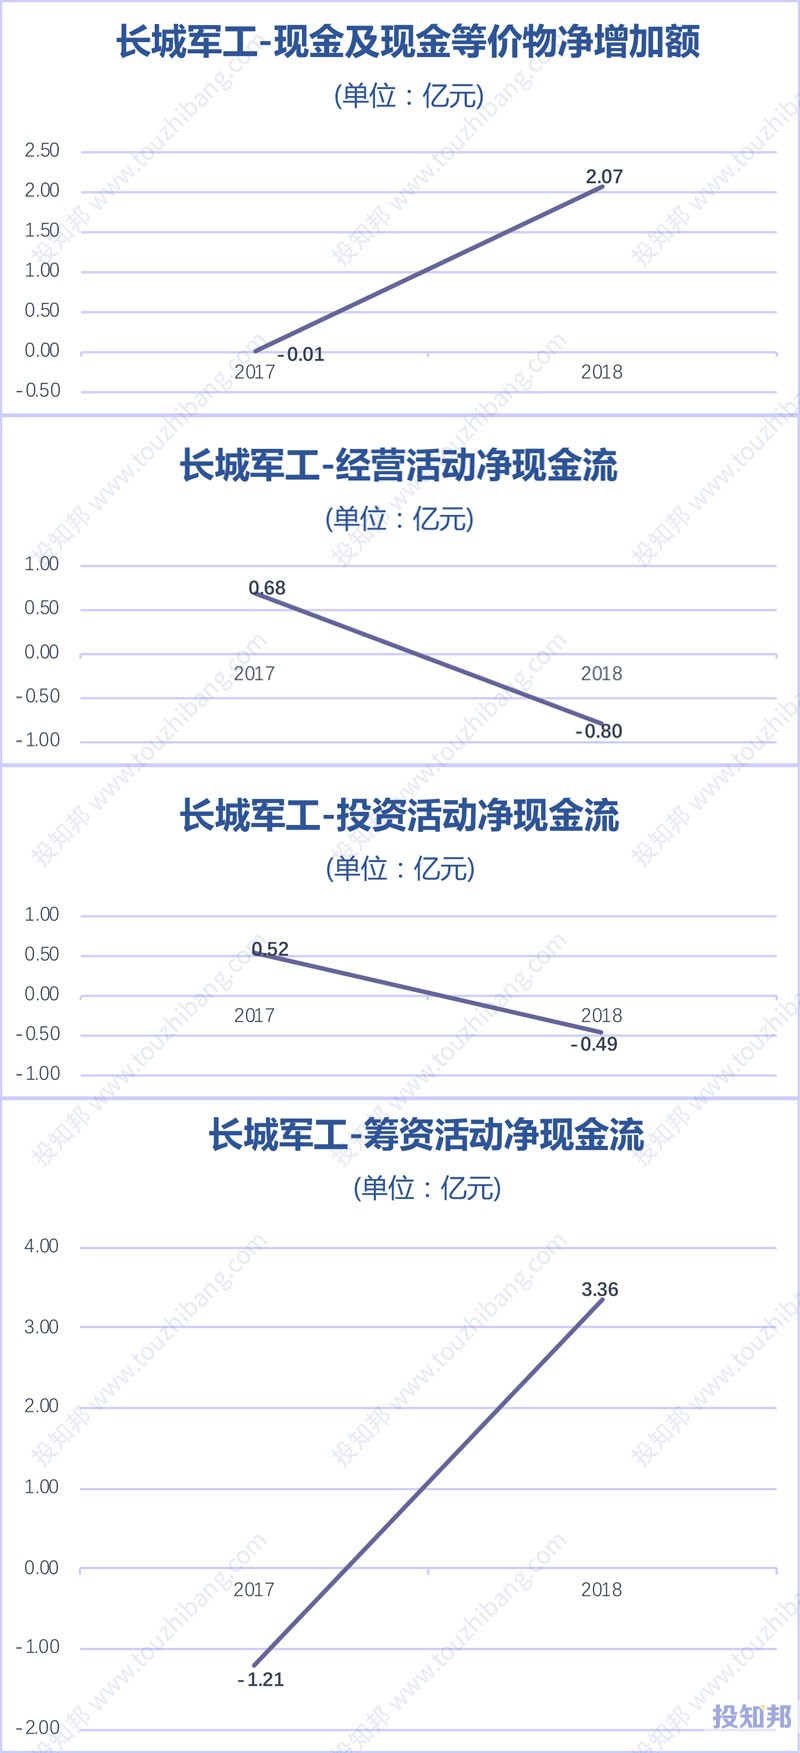 图解长城军工(601606)财报数据(2017年~2019年Q3)